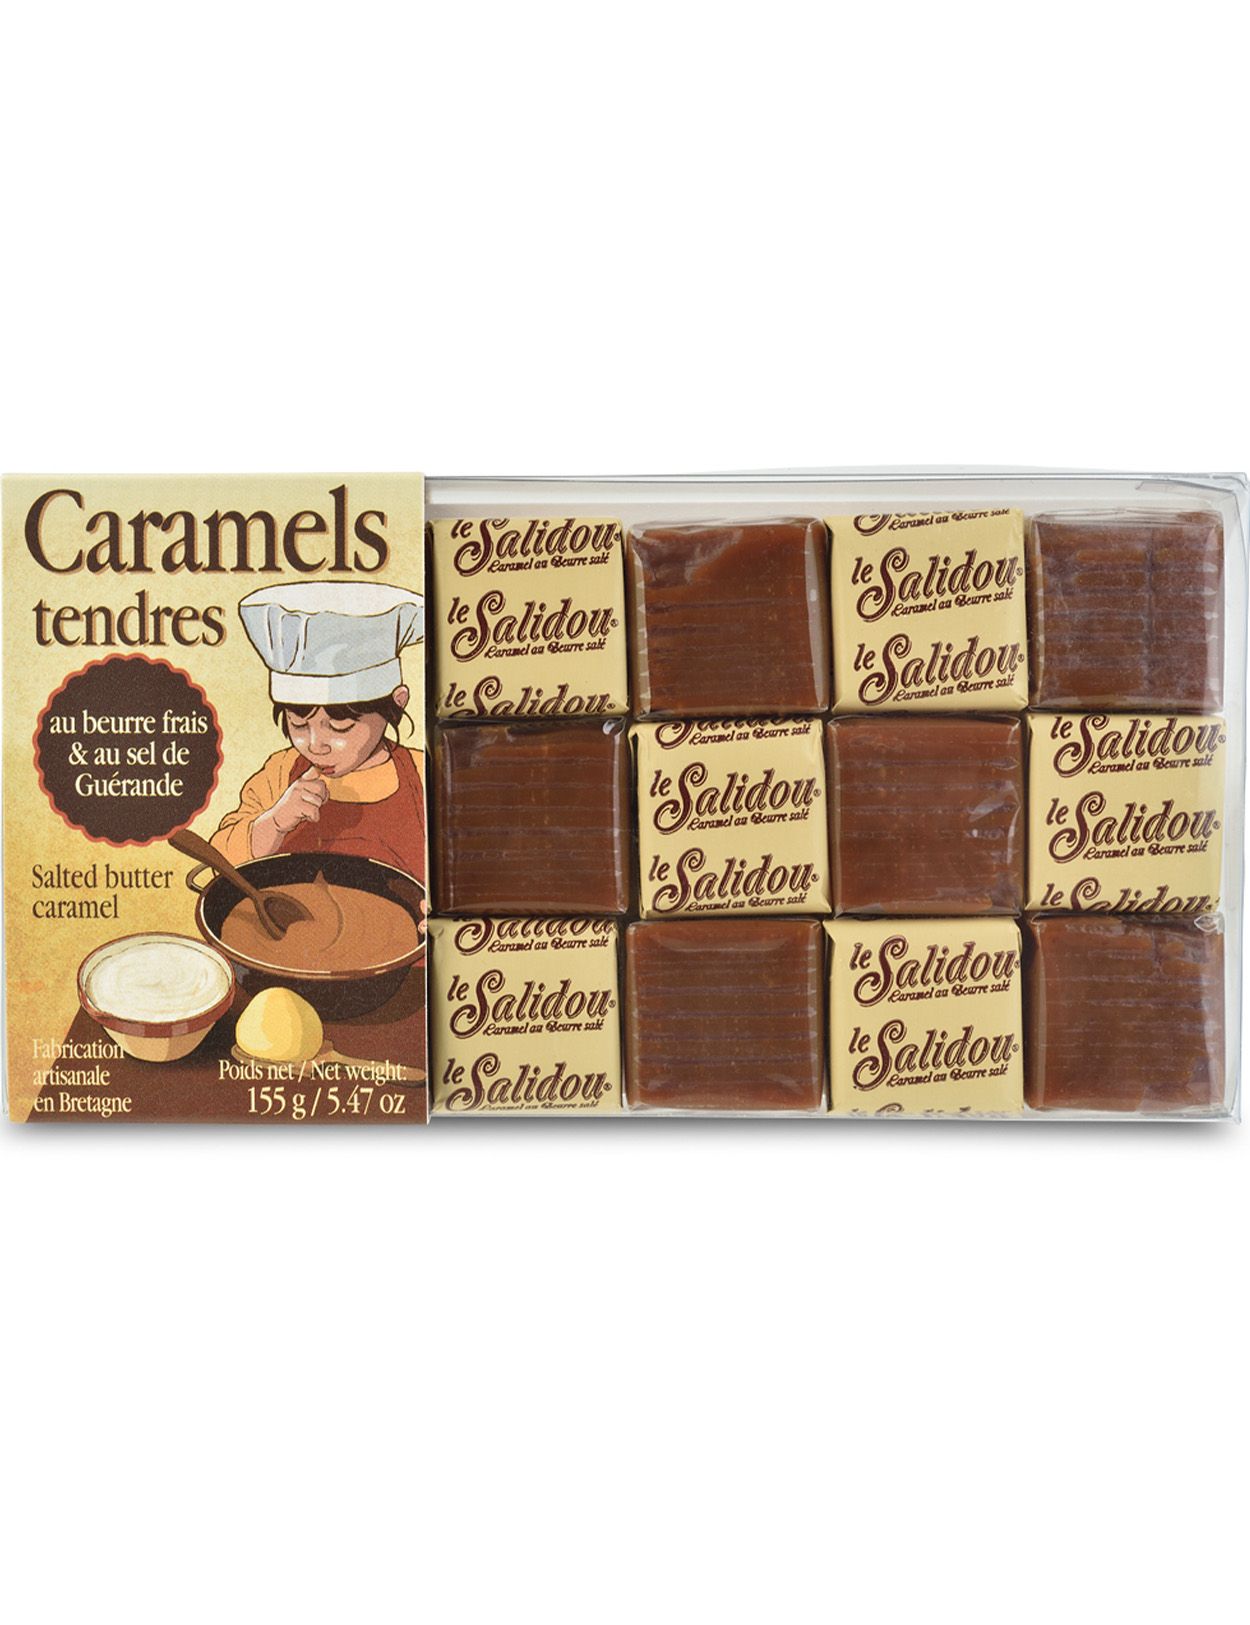 Caramels Tendres - Caramels with Fleur de Sel